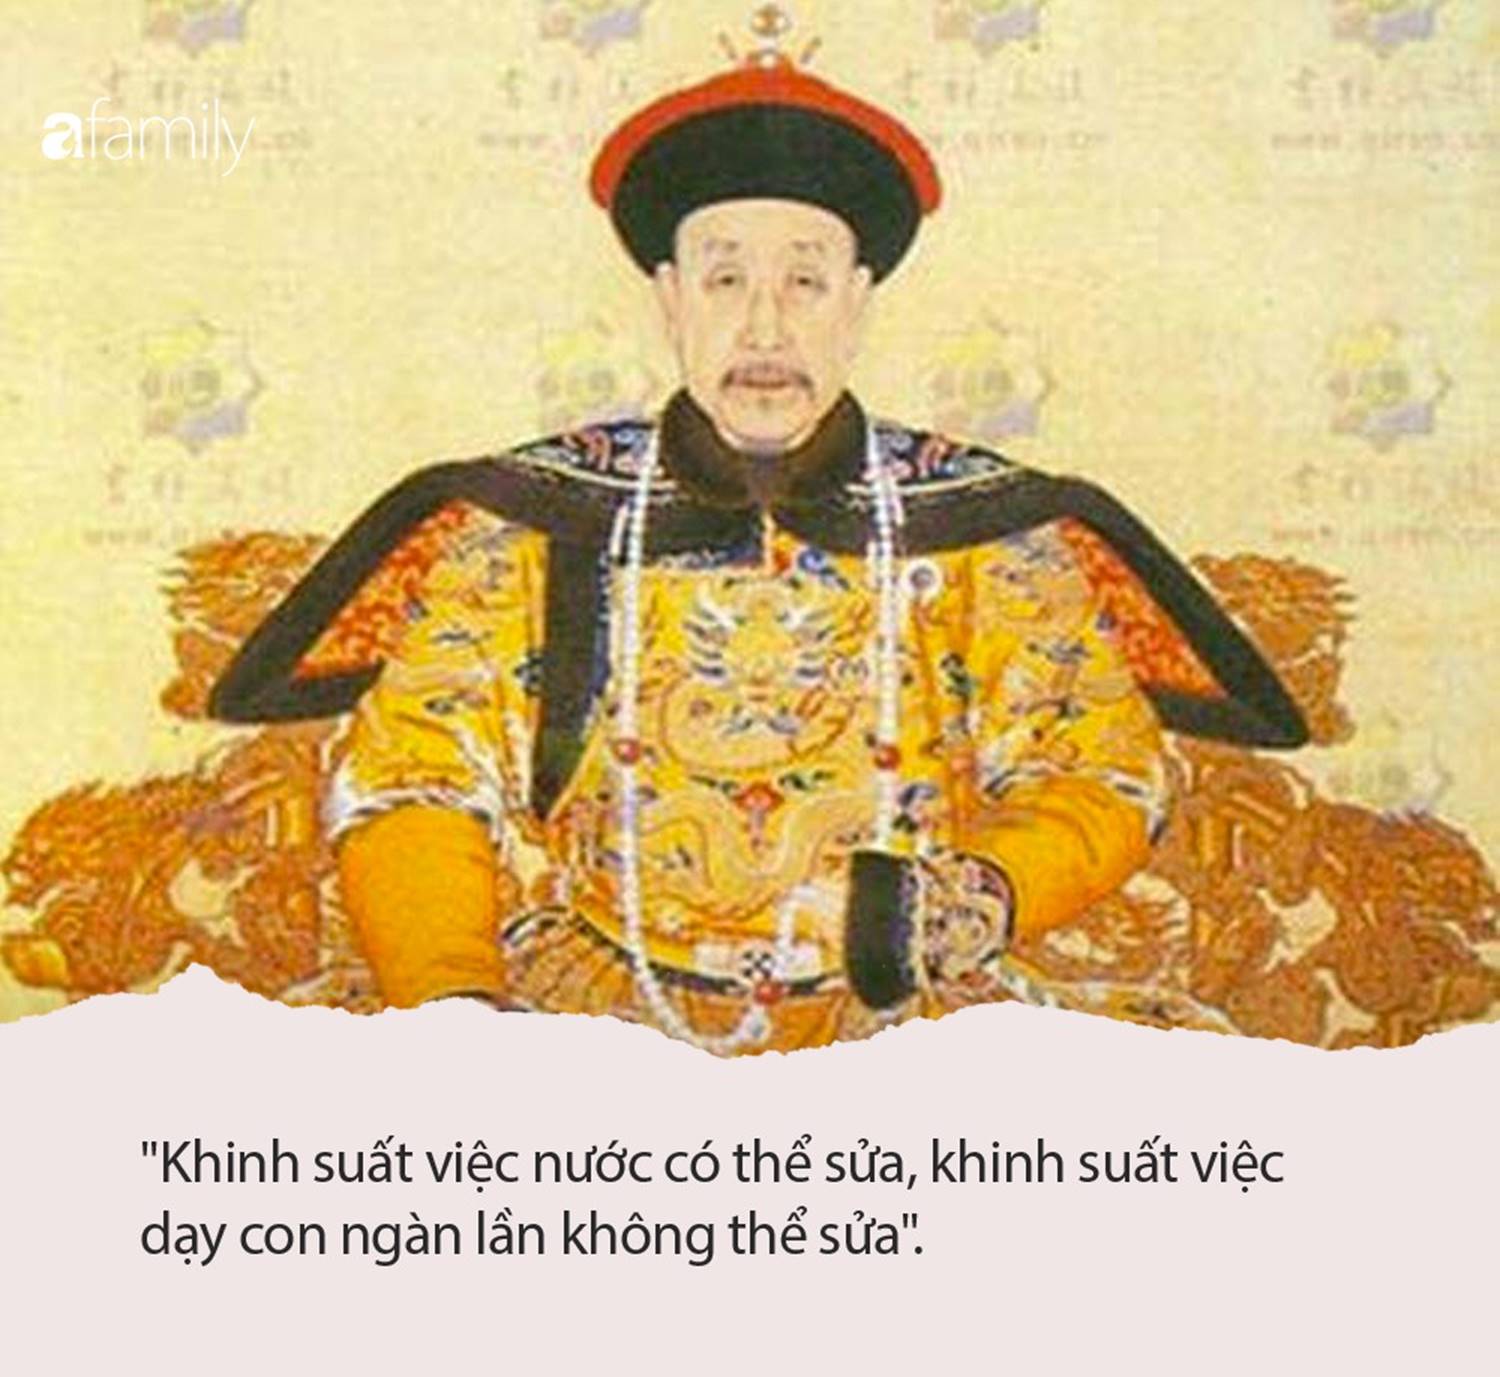 Hoàng đế Khang Hi: Khinh suất việc nước có thể sửa, khinh suất việc dạy con ngàn lần không thể sửa”-1